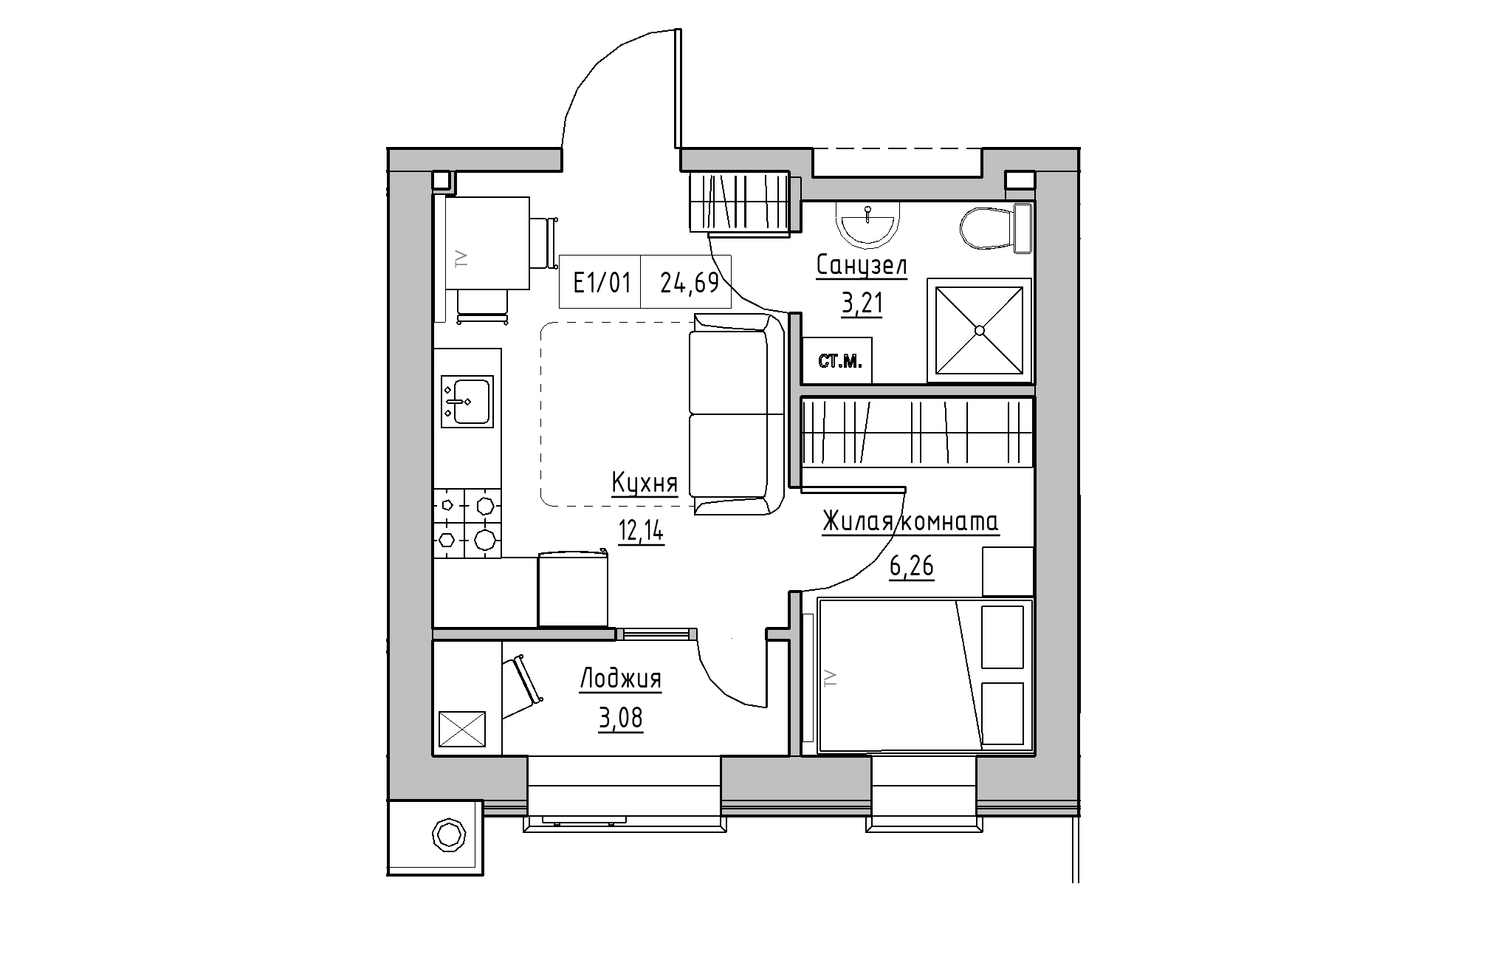 Планування 1-к квартира площею 24.69м2, KS-013-05/0015.